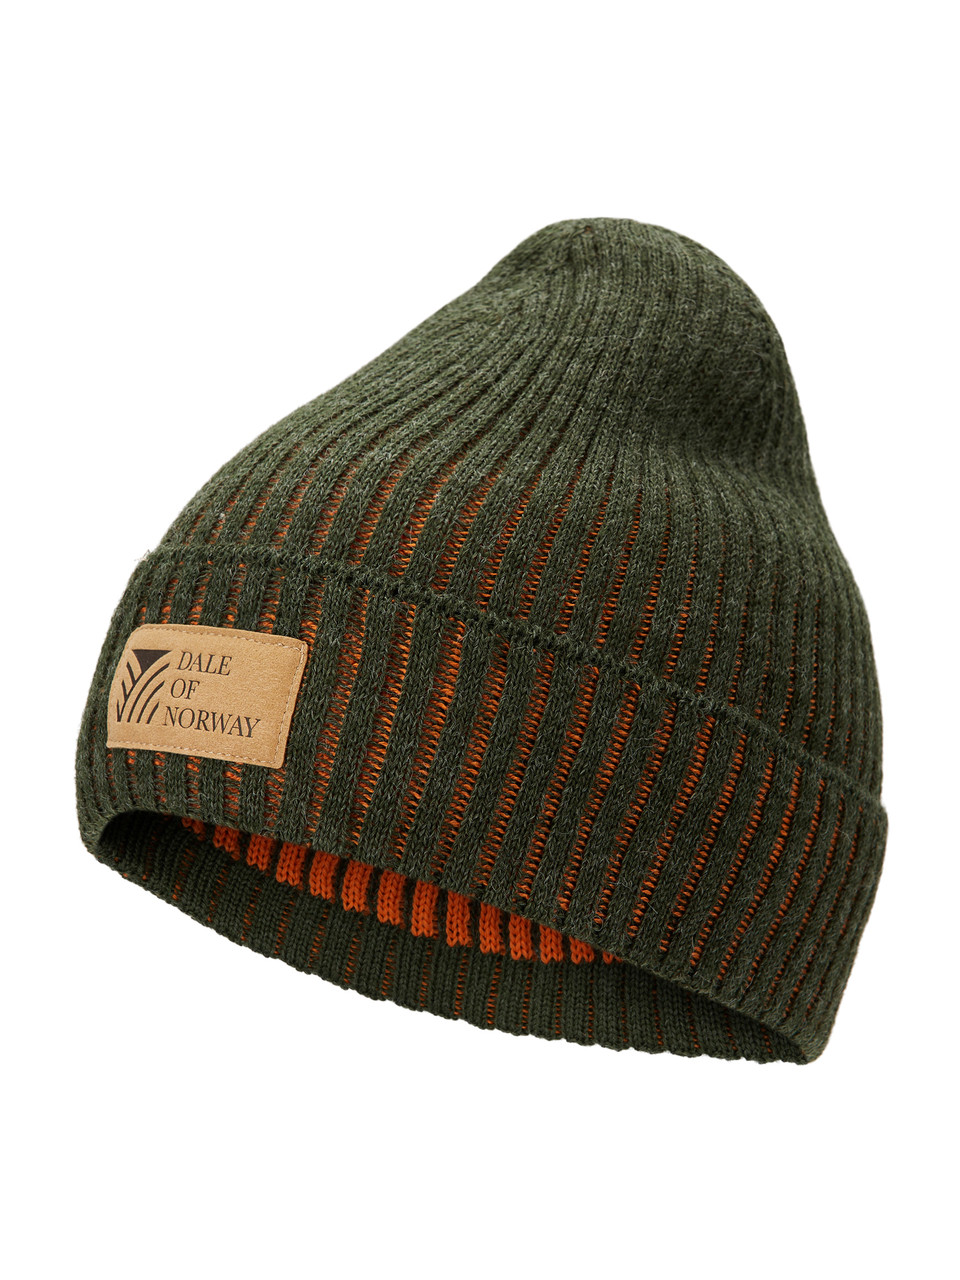 Dale of Norway - Alvoy Hat: Dark Green/Orange Peel, 48931-N00